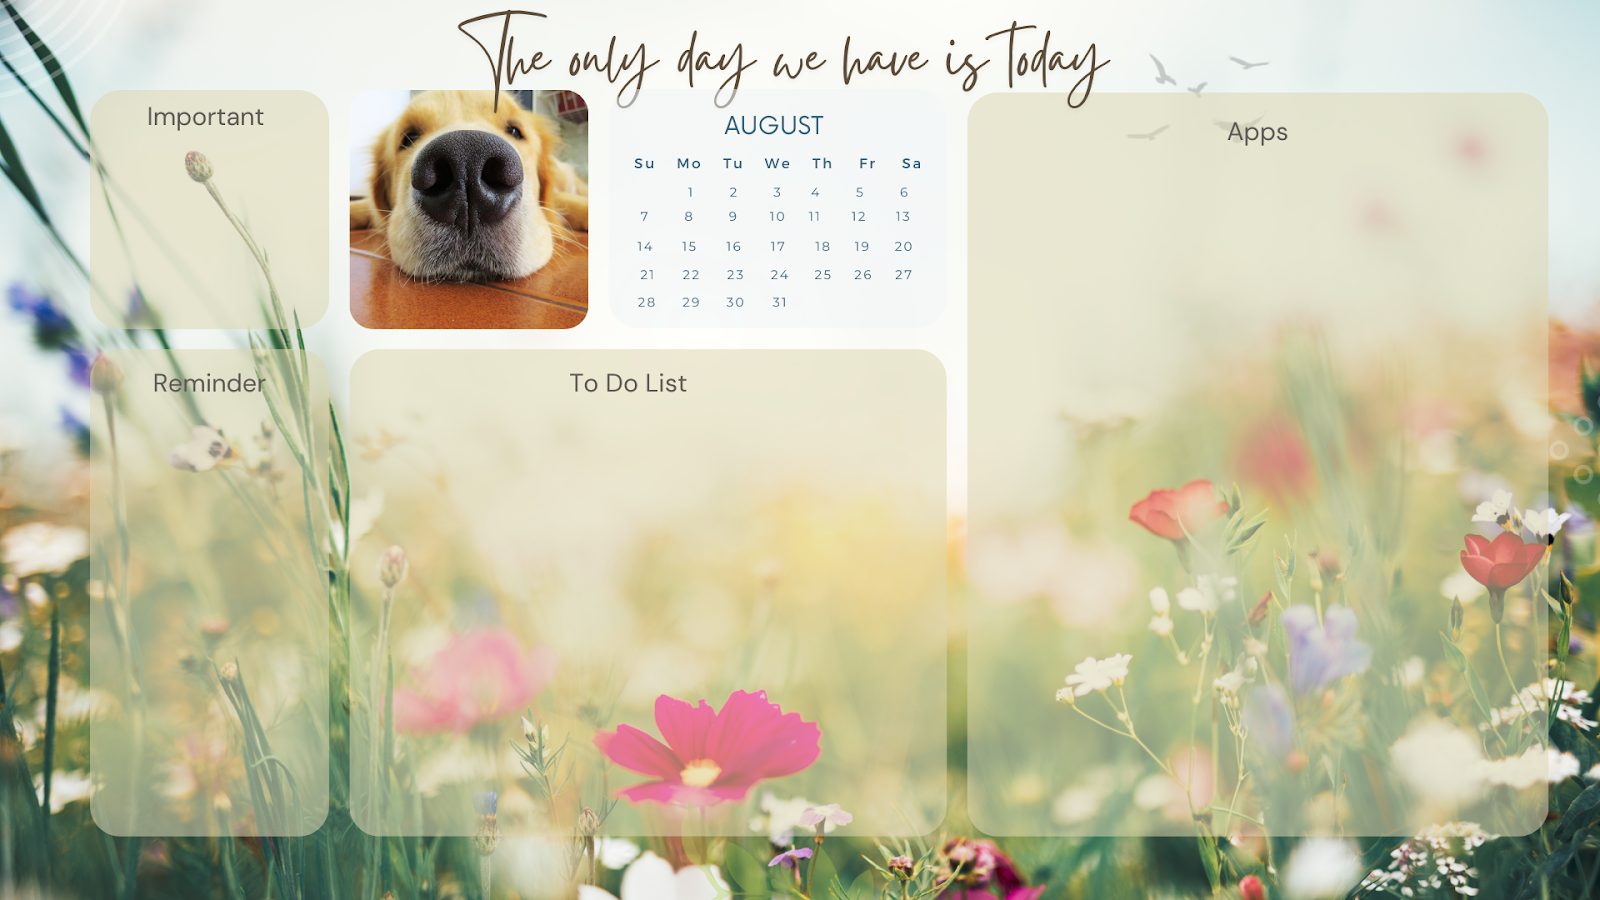 free desktop wallpaper organizer with august 2022 calendar featuring cute dog 7